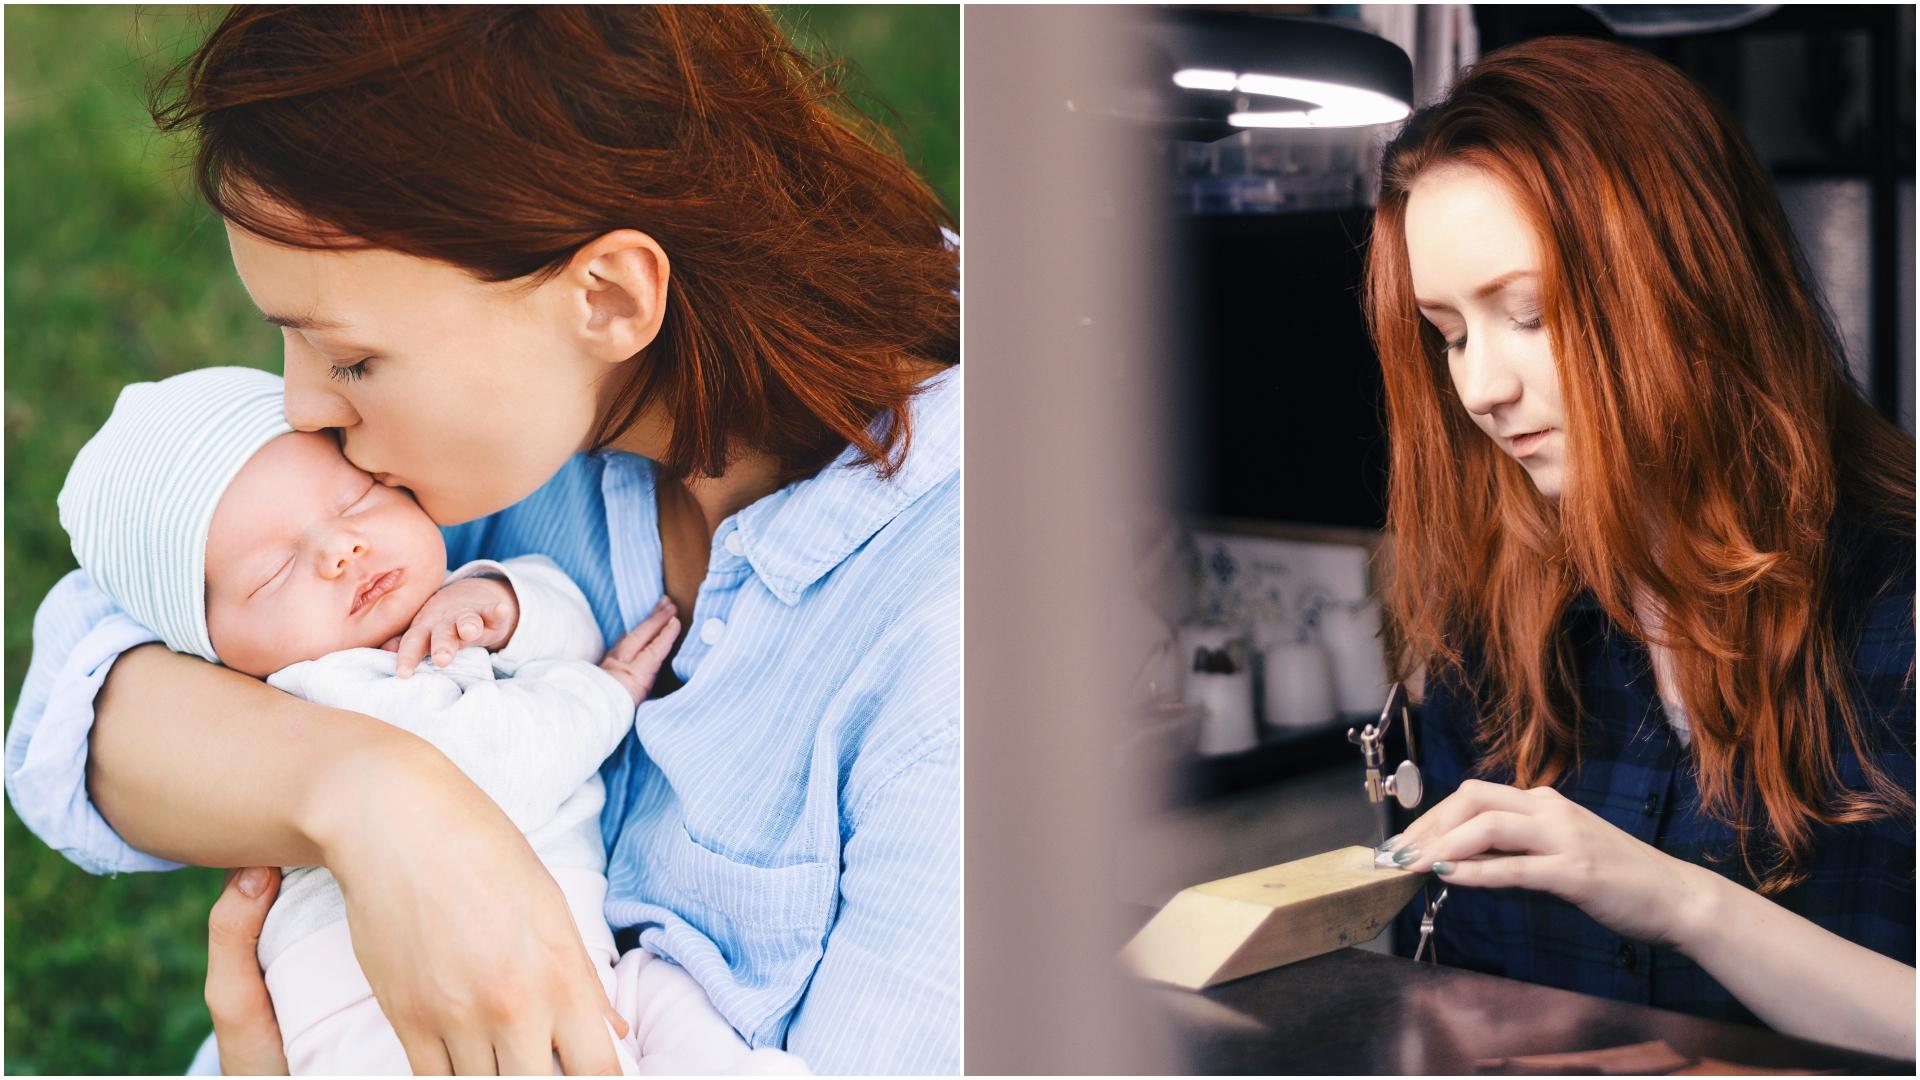 colaj femeia care face bijuterii din lapte matern. în prima poză, femeie în albastru care ține bebeluș în brațe, în a doua, femeie cu ărul roșu care face bijuterii